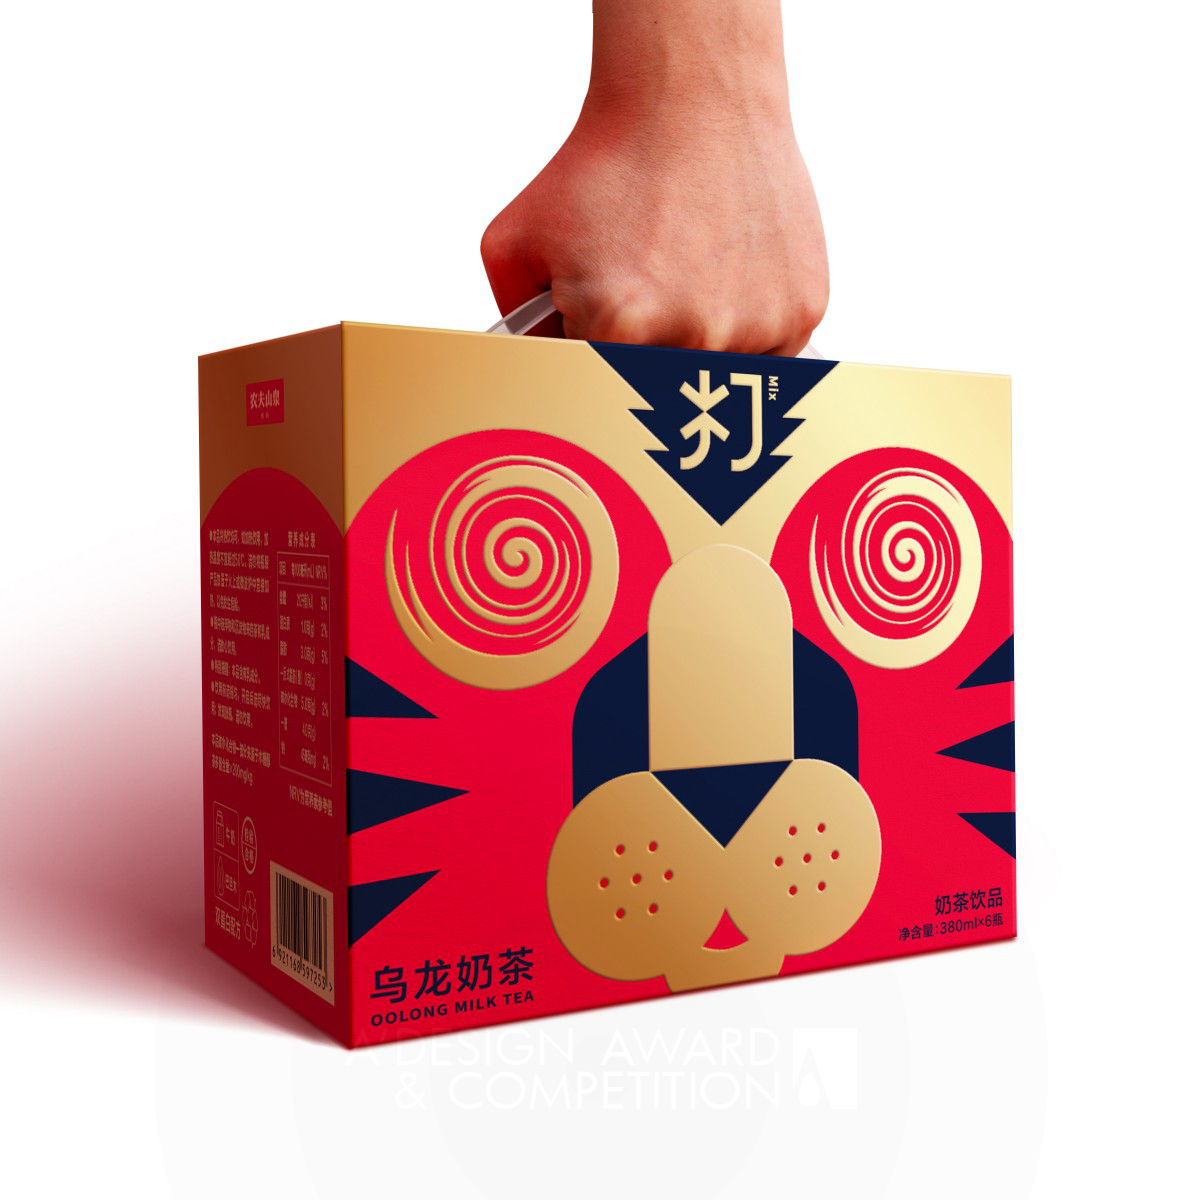 Новый взгляд на традиции: уникальная упаковка для молочного чая от Blackandgold Shanghai